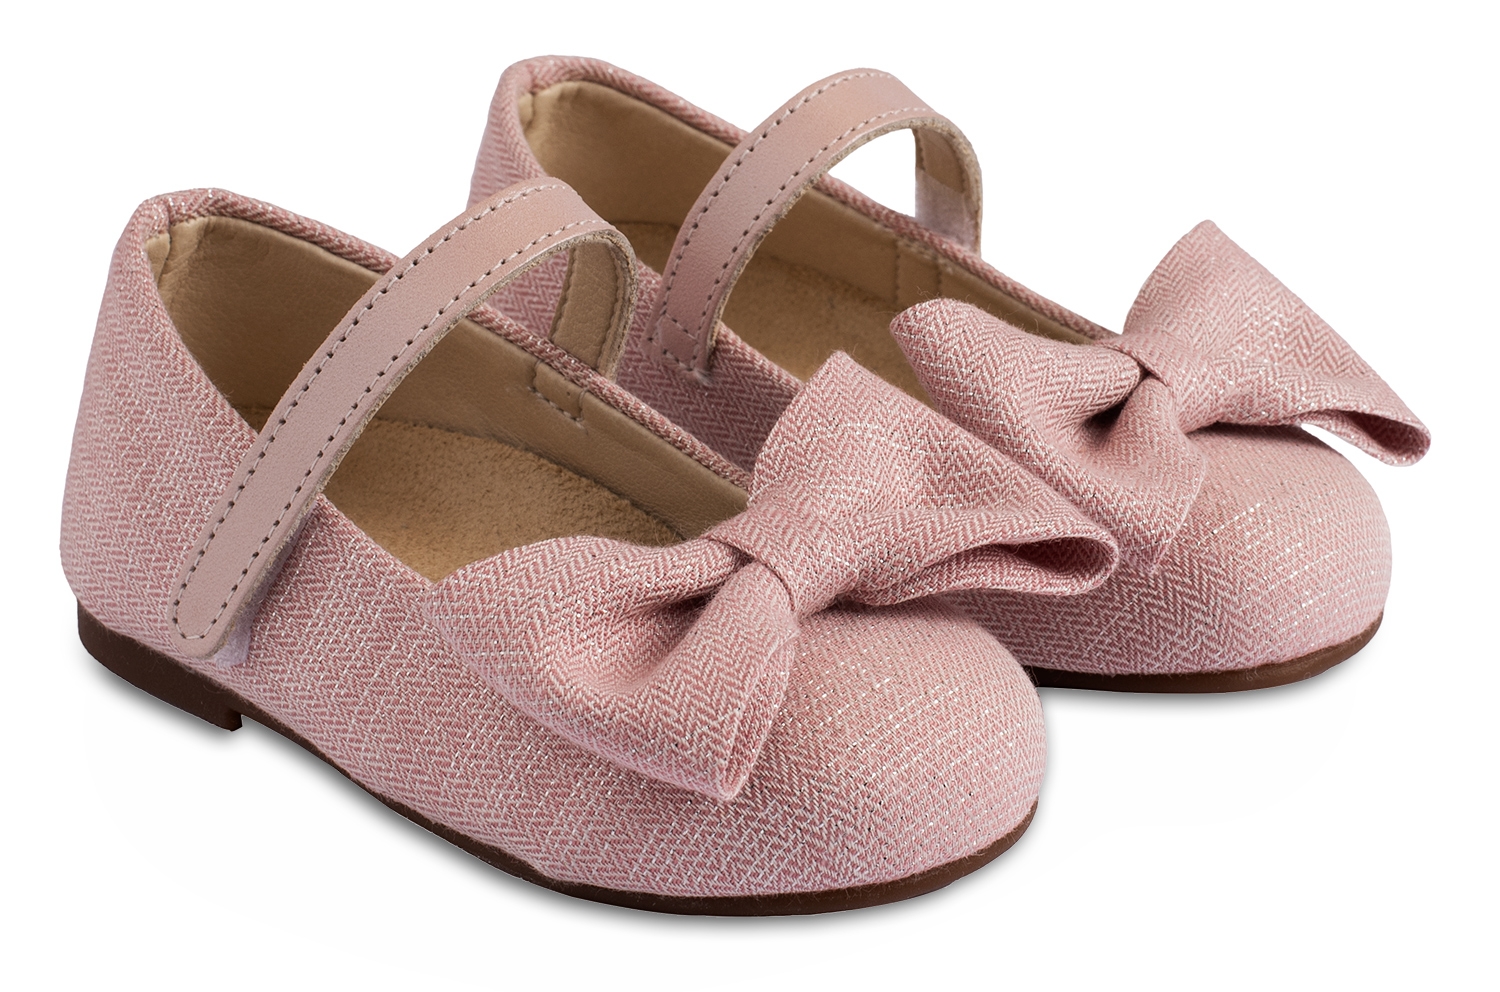 Γοβάκι Λινό Ροζ με Χρυσοκλωστή - Βαπτιστικά παπούτσια για κορίτσι